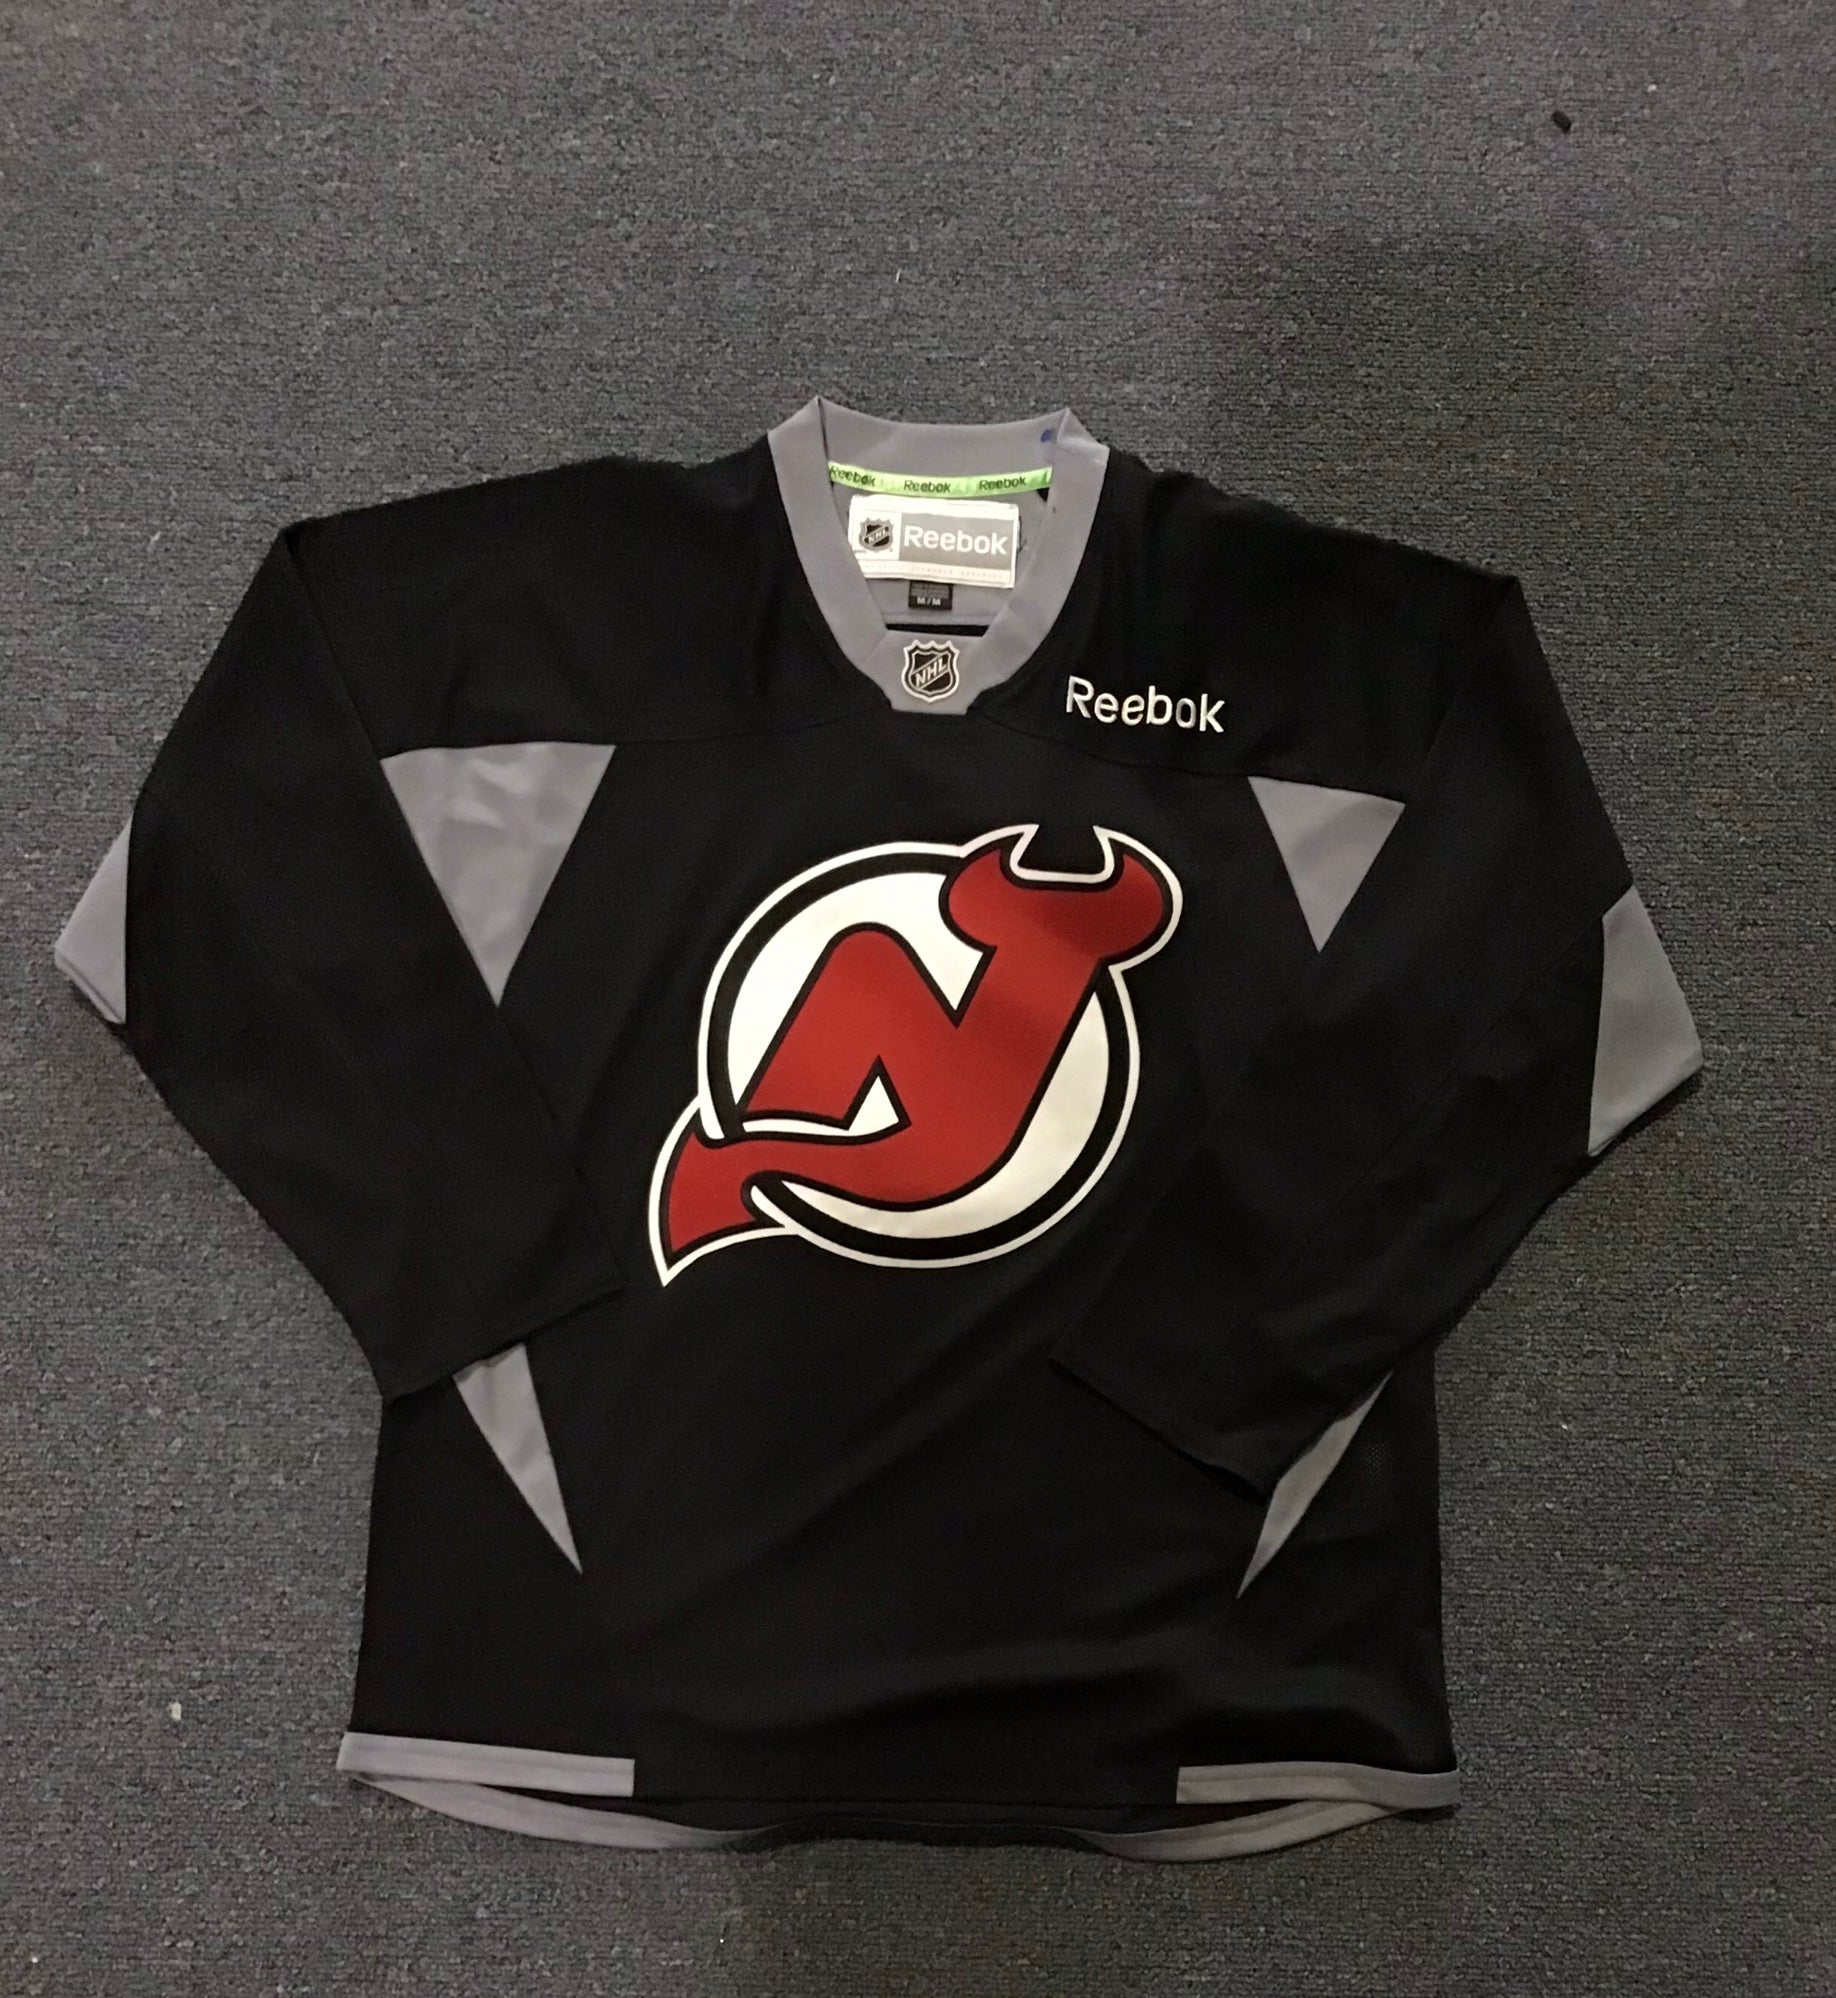 Reebok New Jersey Devils Premier Jersey - Adult